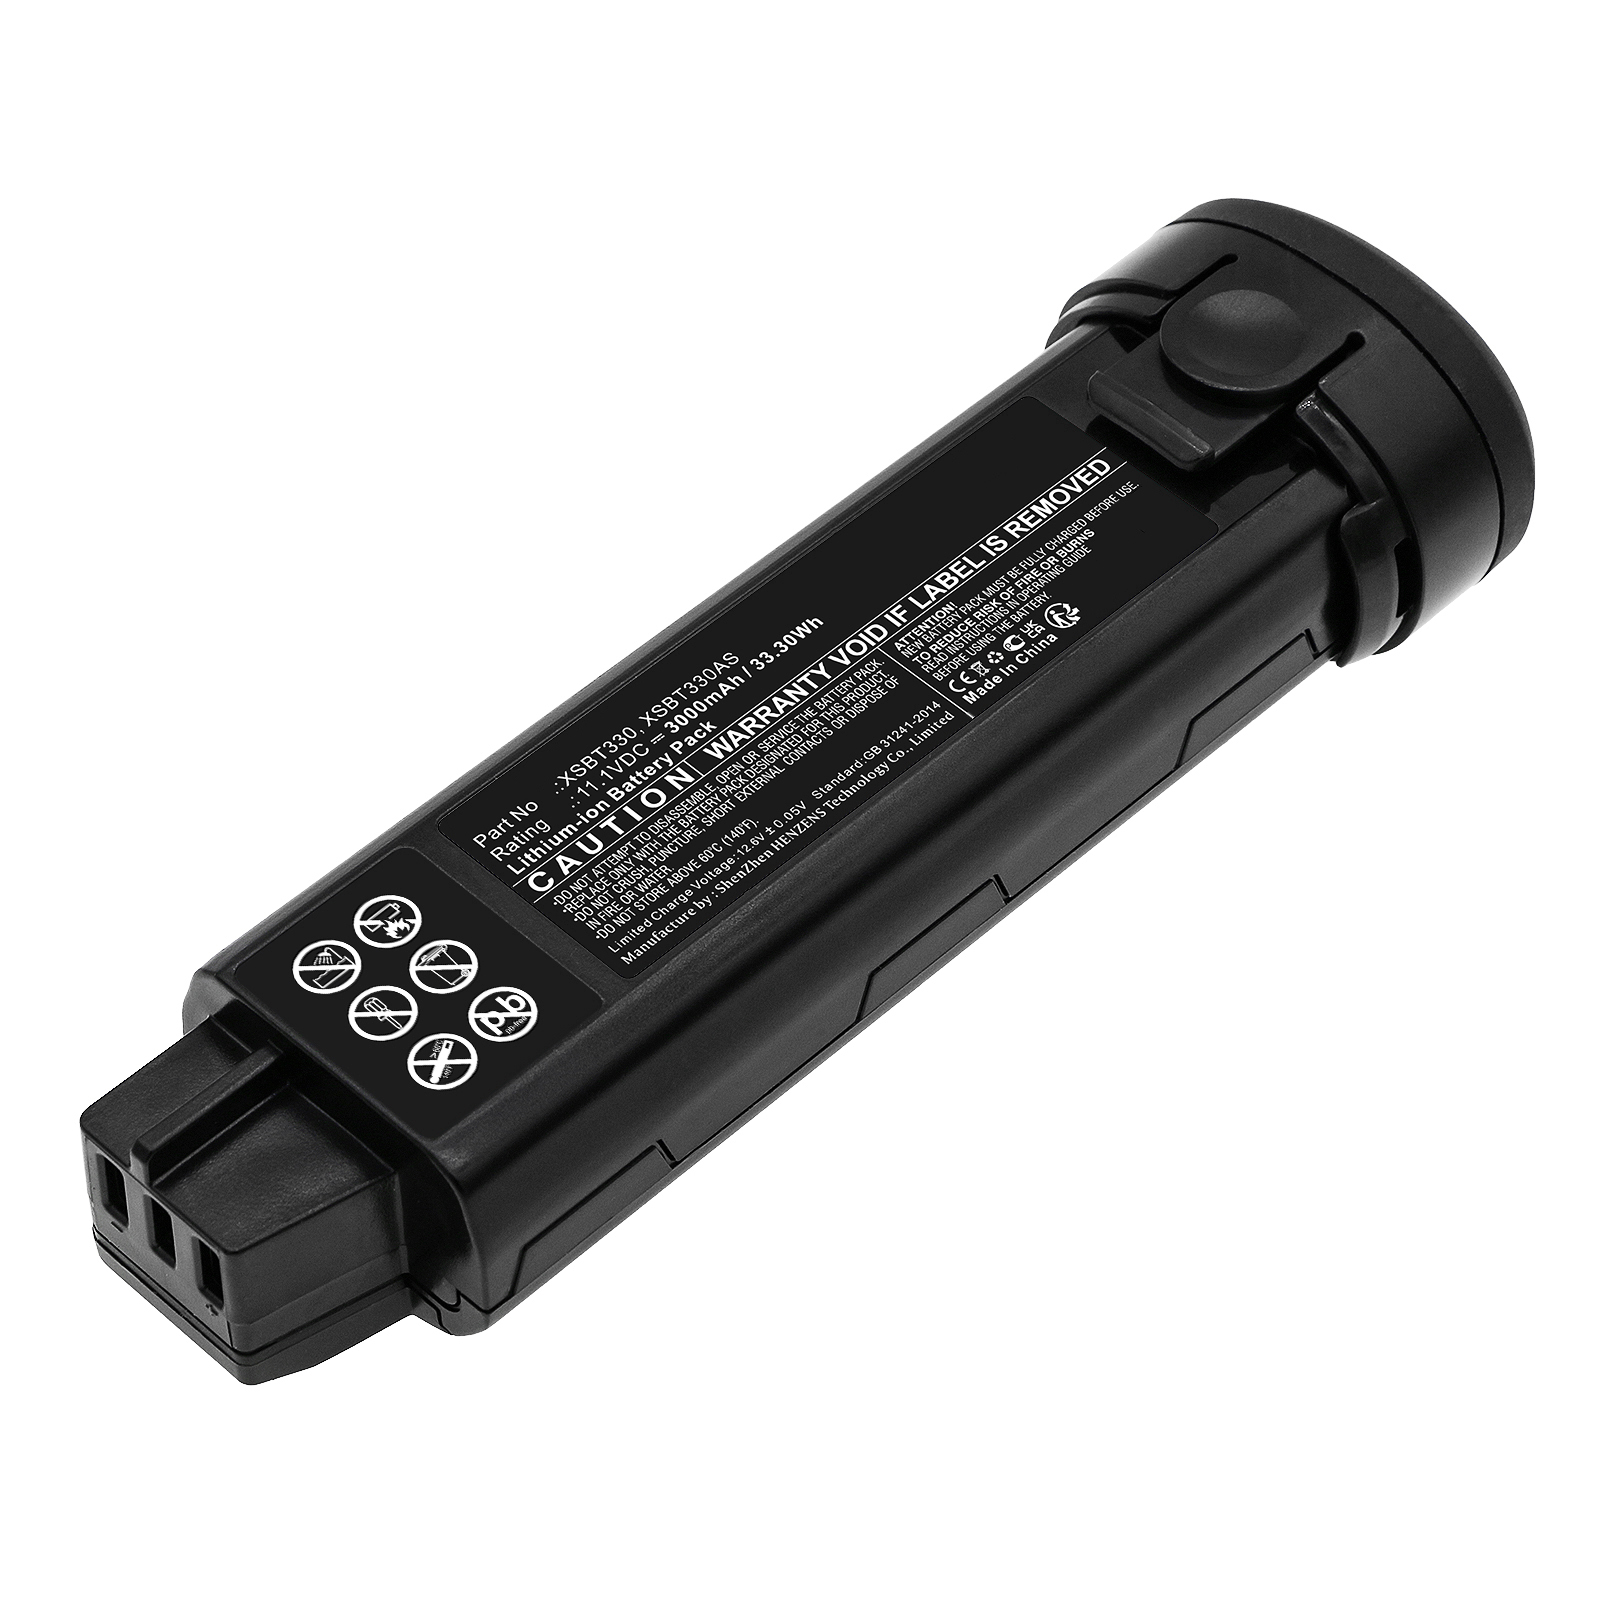 Synergy Digital Vacuum Cleaner Battery, Compatible with Shark XSBT330 Vacuum Cleaner Battery (Li-ion, 11.1V, 3000mAh)